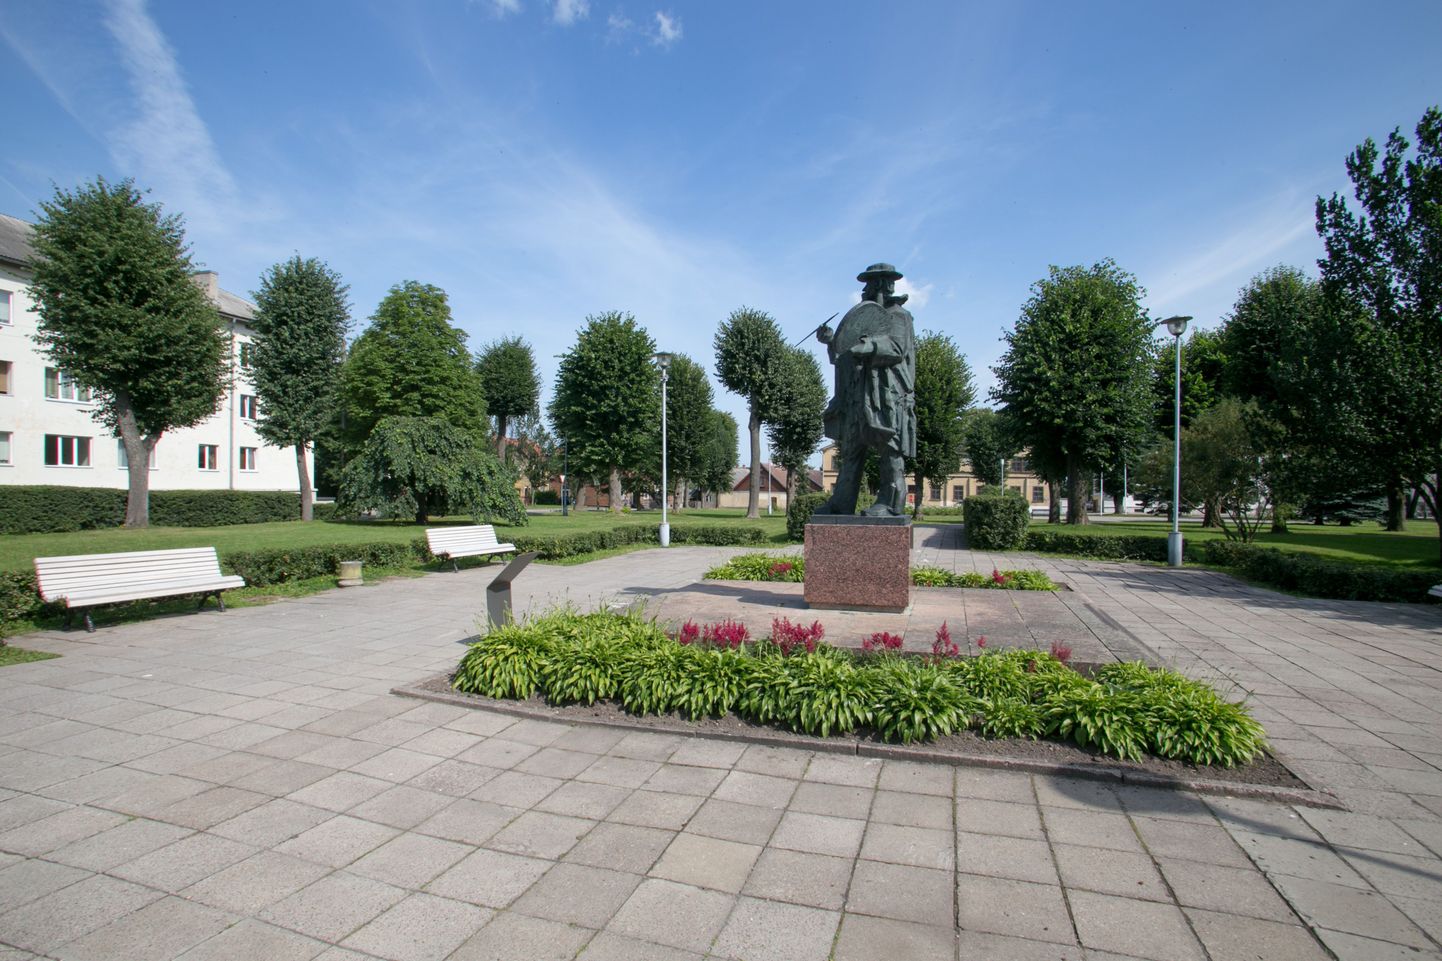 Augustiöö sõit algab laupäeval 30. august kell 20 Viljandis Köleri pargis.